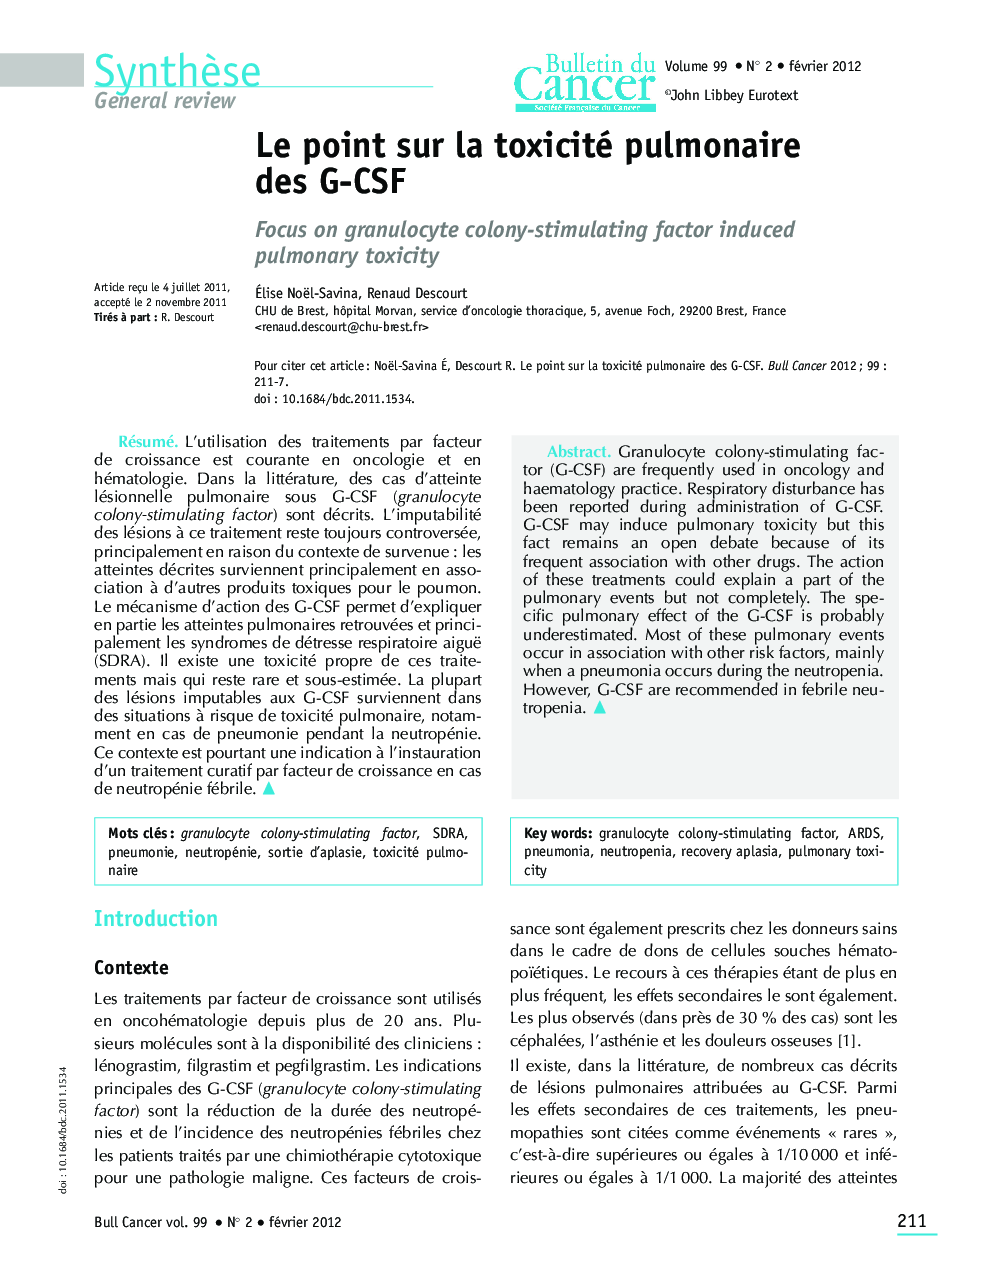 Le point sur la toxicité pulmonaire des G-CSF